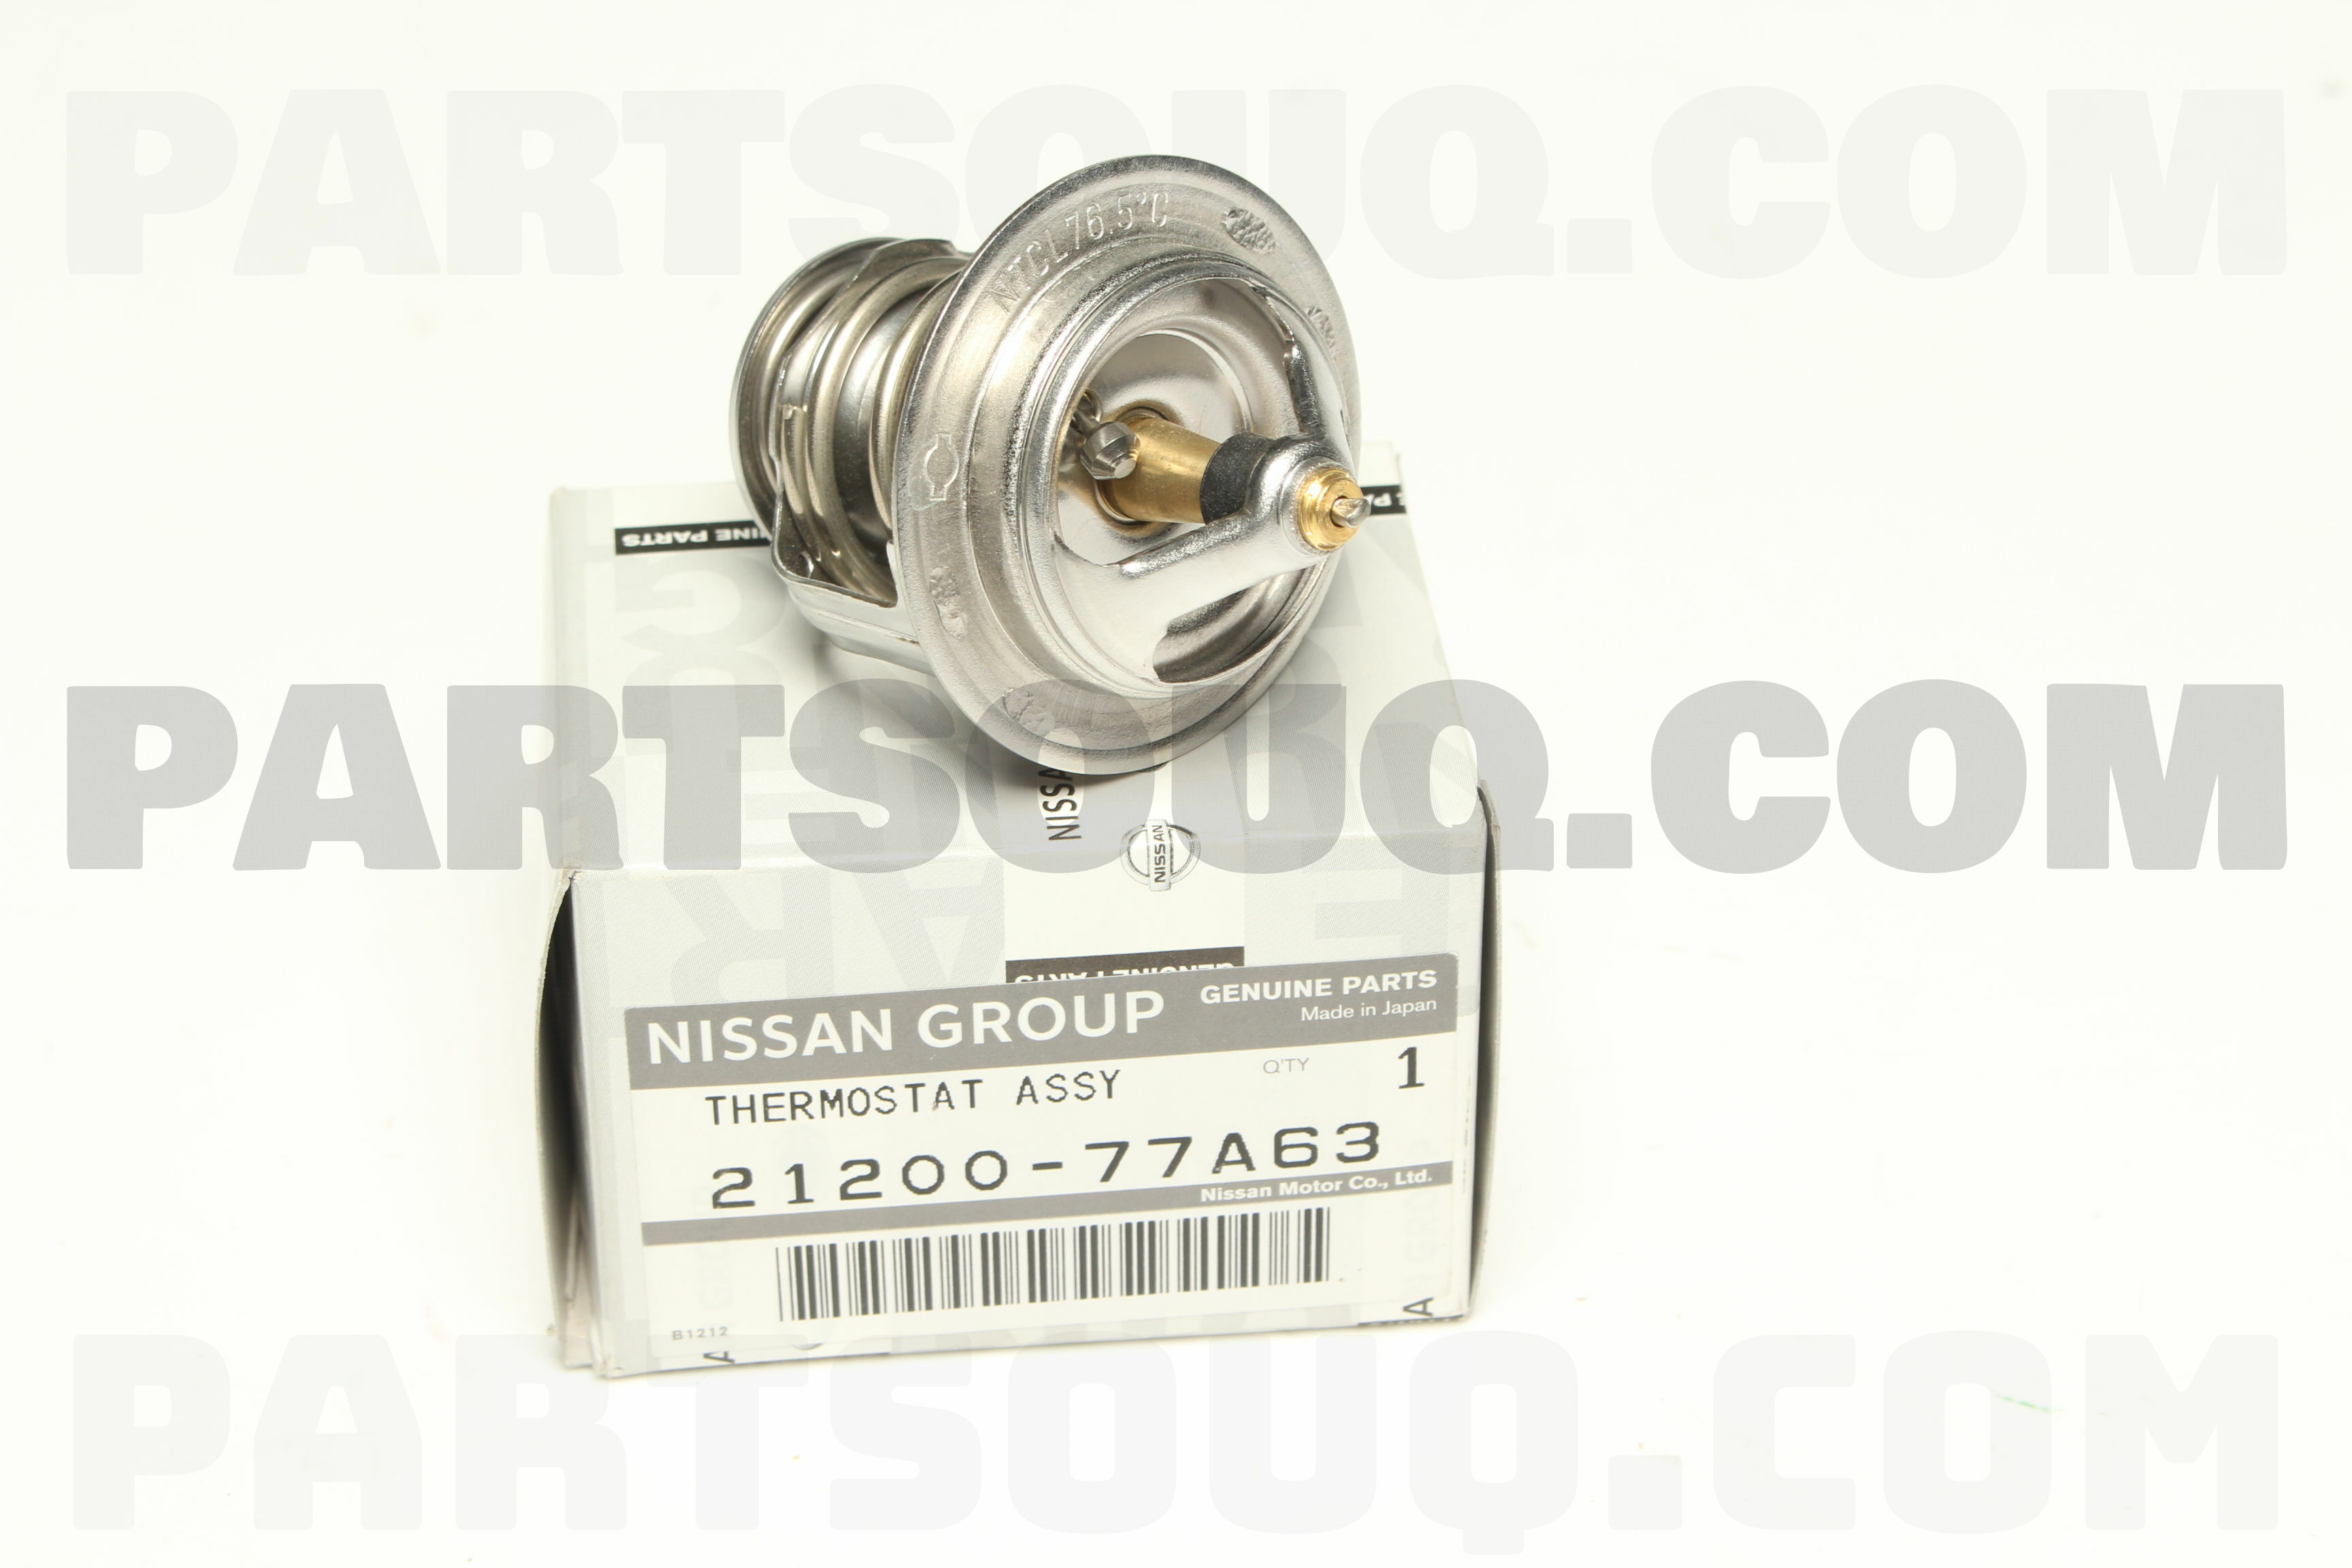 THERMOSTAT ASSY 2120077A63 | Nissan Parts | PartSouq